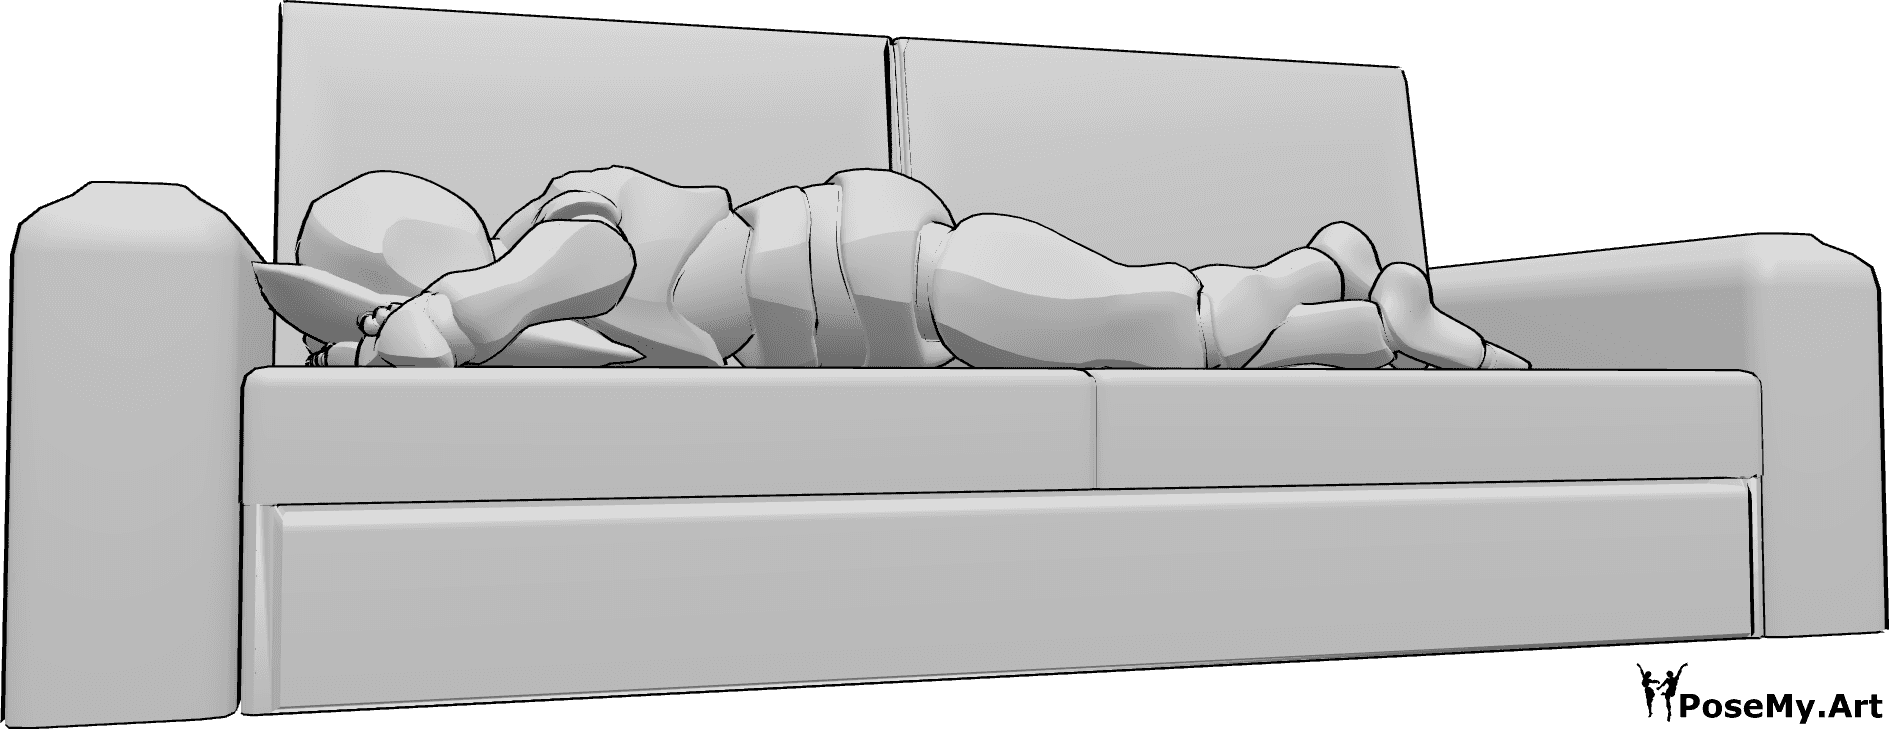 Referencia de poses- Hombre tumbado en el sofá - El hombre está tumbado boca abajo en el sofá, apoyando la cabeza en una almohada.